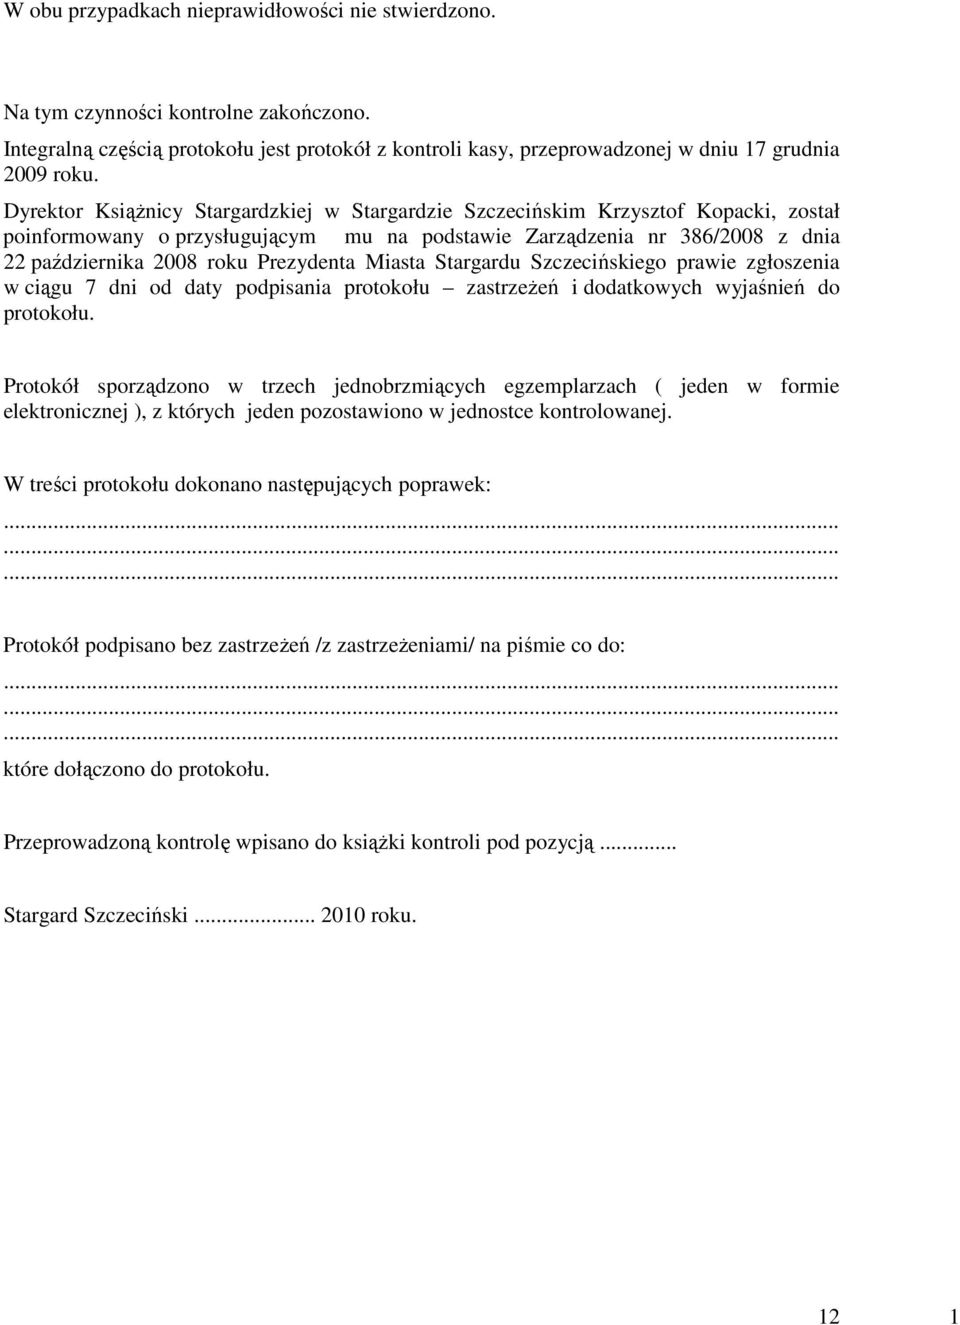 Prezydenta Miasta Stargardu Szczecińskiego prawie zgłoszenia w ciągu 7 dni od daty podpisania protokołu zastrzeŝeń i dodatkowych wyjaśnień do protokołu.